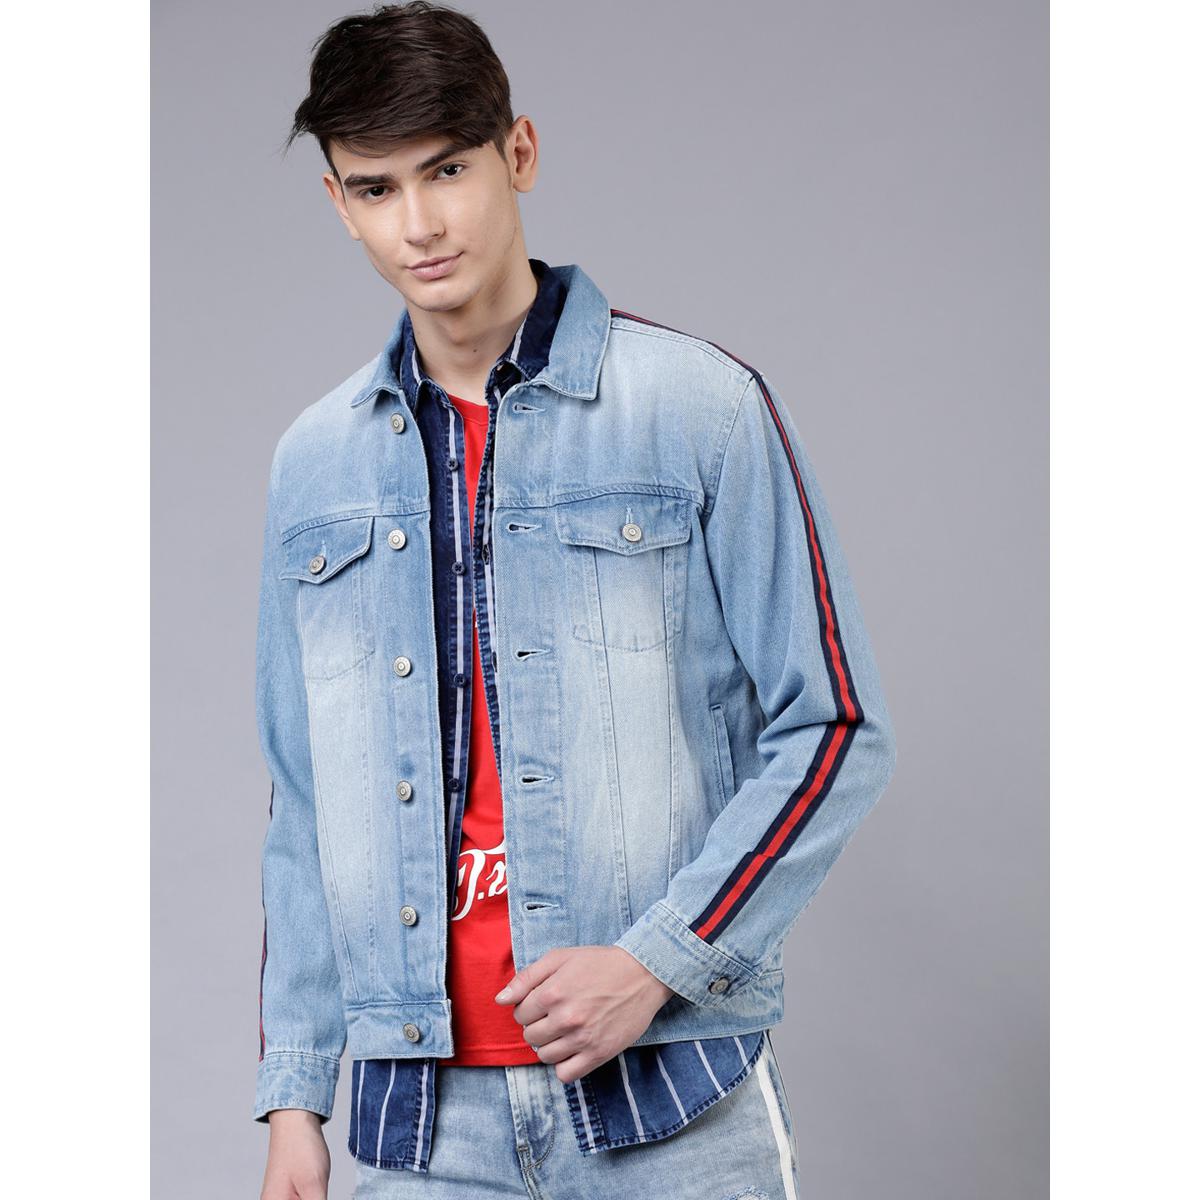 HIGHLANDER Full Sleeve Embroidered Men Jacket - Buy HIGHLANDER Full Sleeve  Embroidered Men Jacket Online at Best Prices in India | Flipkart.com